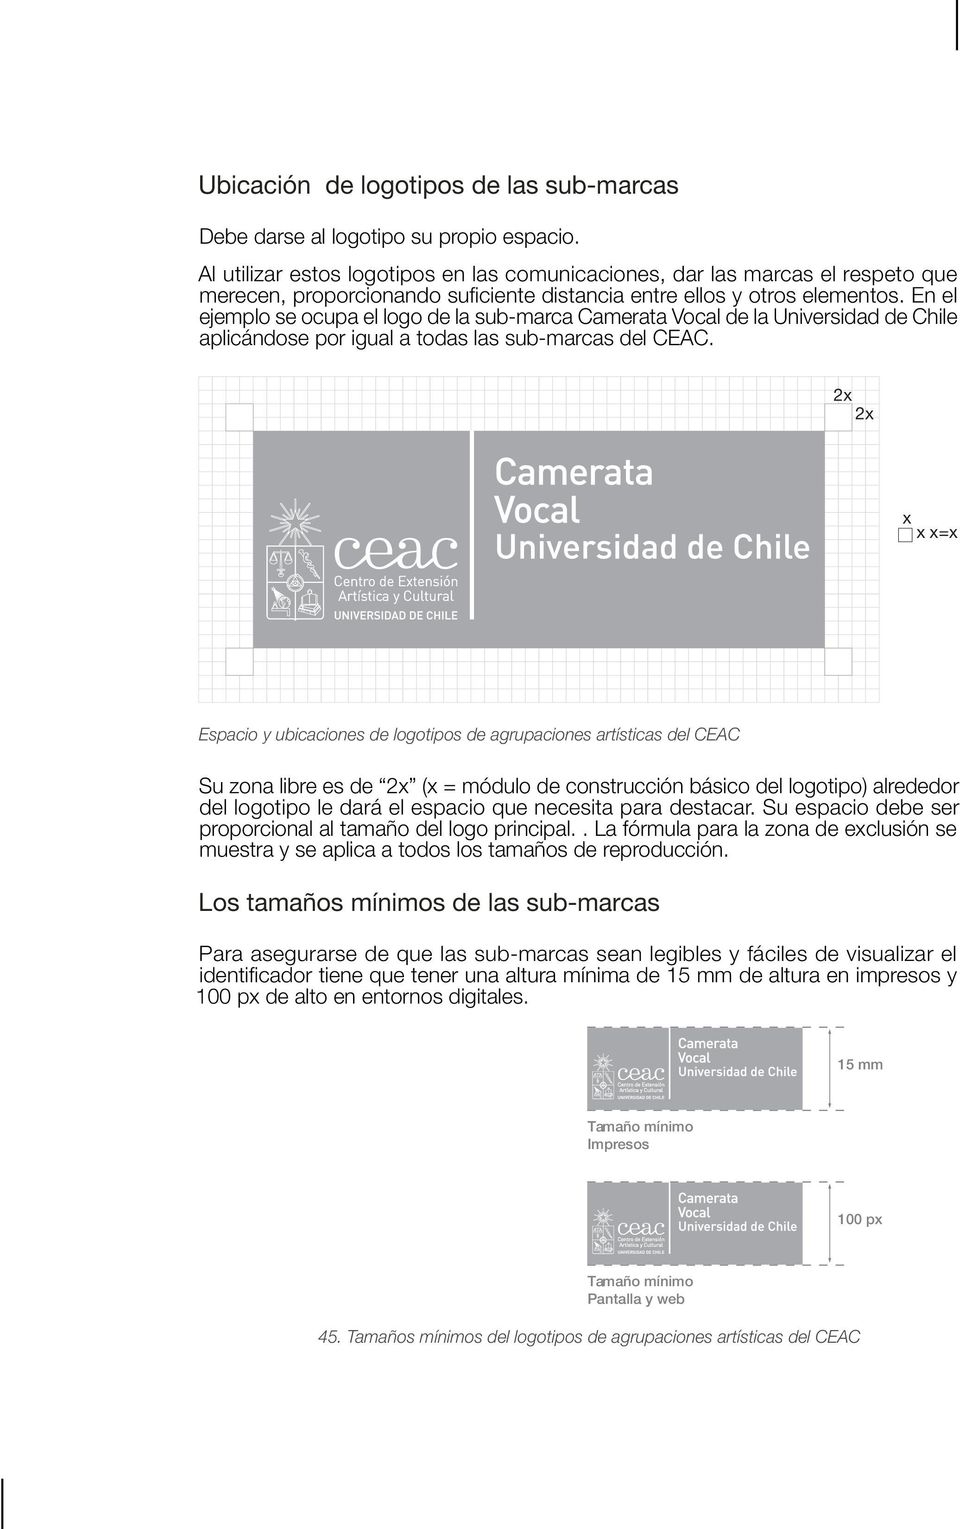 En el ejemplo se ocupa el logo de la sub-marca Camerata Vocal de la Universidad de Chile aplicándose por igual a todas las sub-marcas del CEAC.